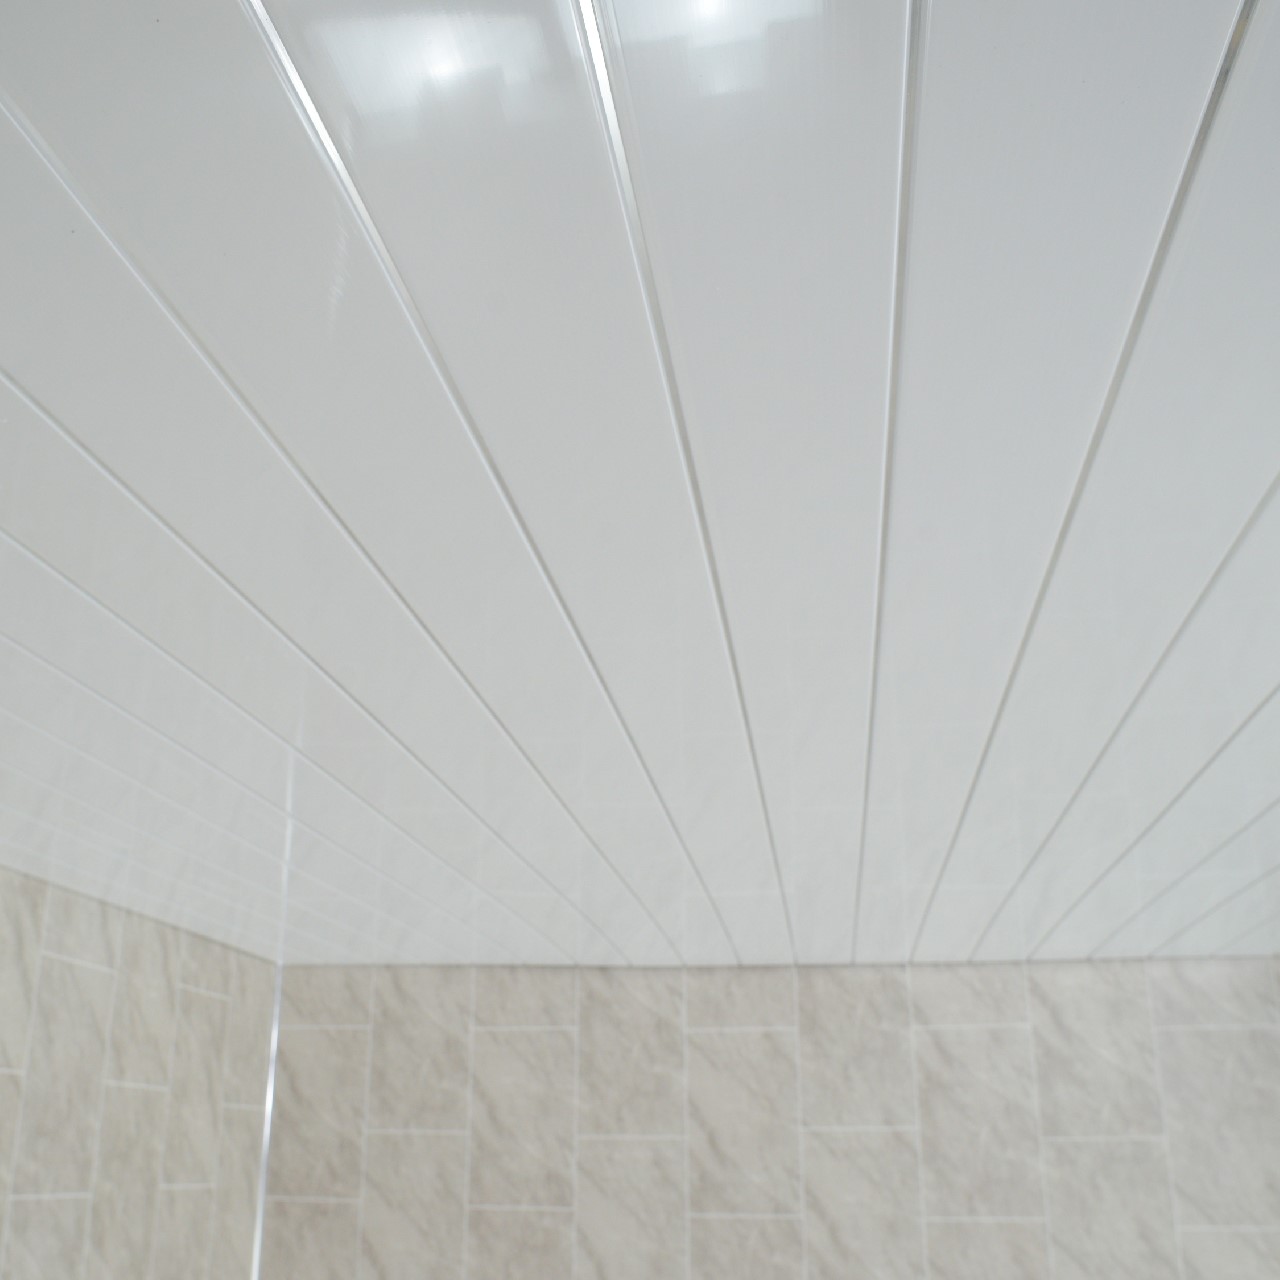 Gloss White Chrome Strip Bathroom Wall Cladding White ...